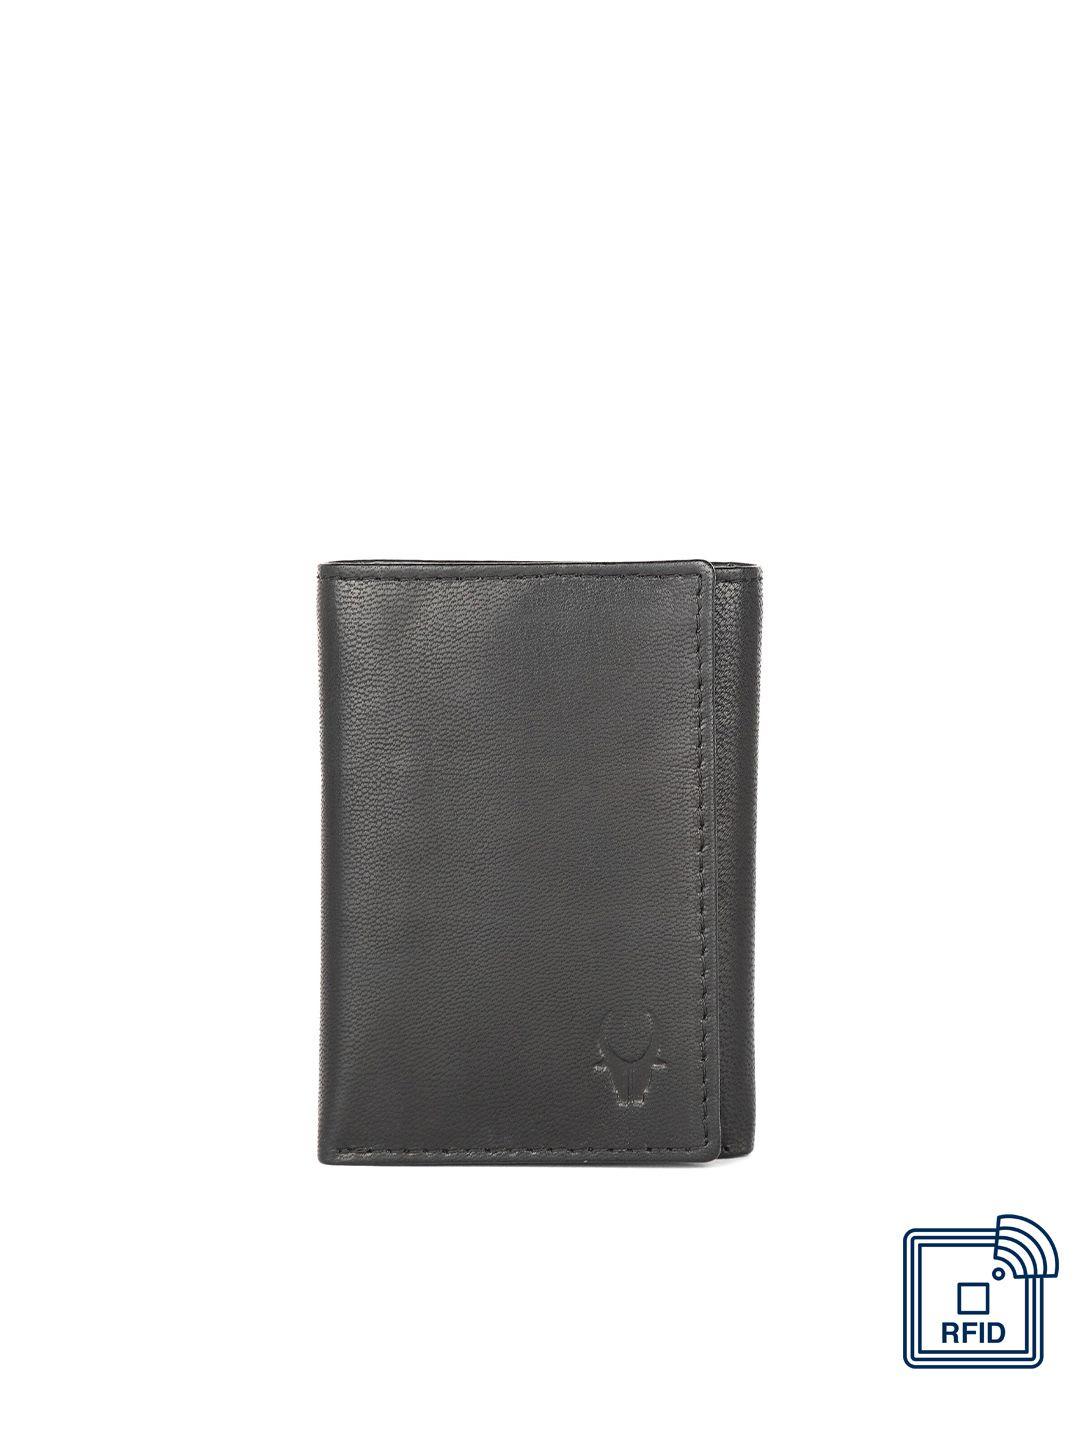 wildhorn men black textured three fold leather wallet